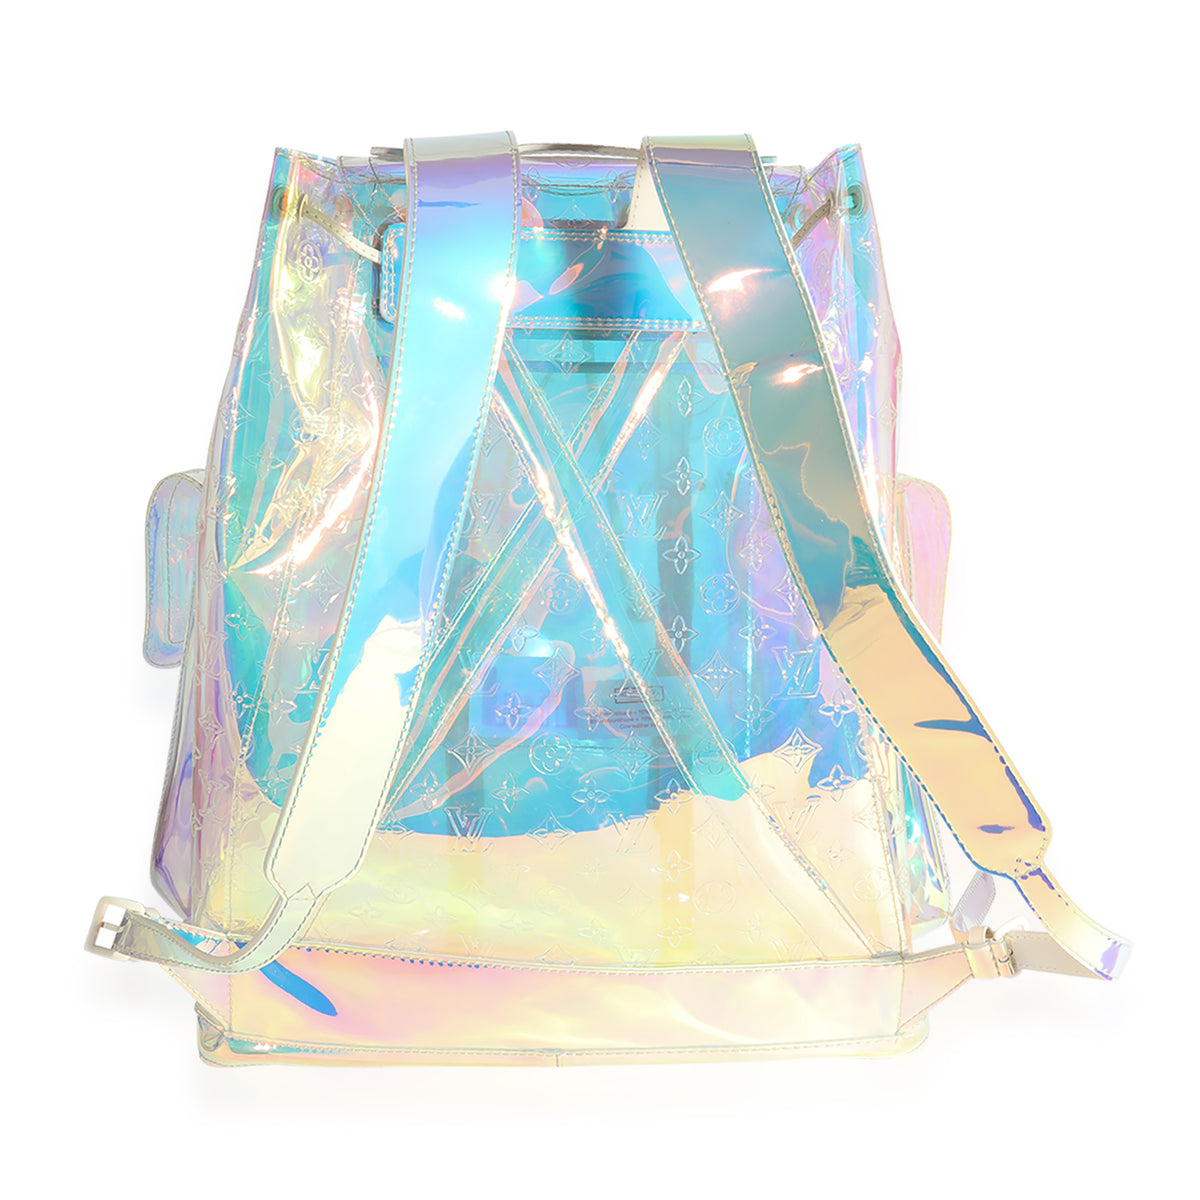 Louis Vuitton X Virgil Abloh PVC Prism Christopher Backpack, myGemma, CH